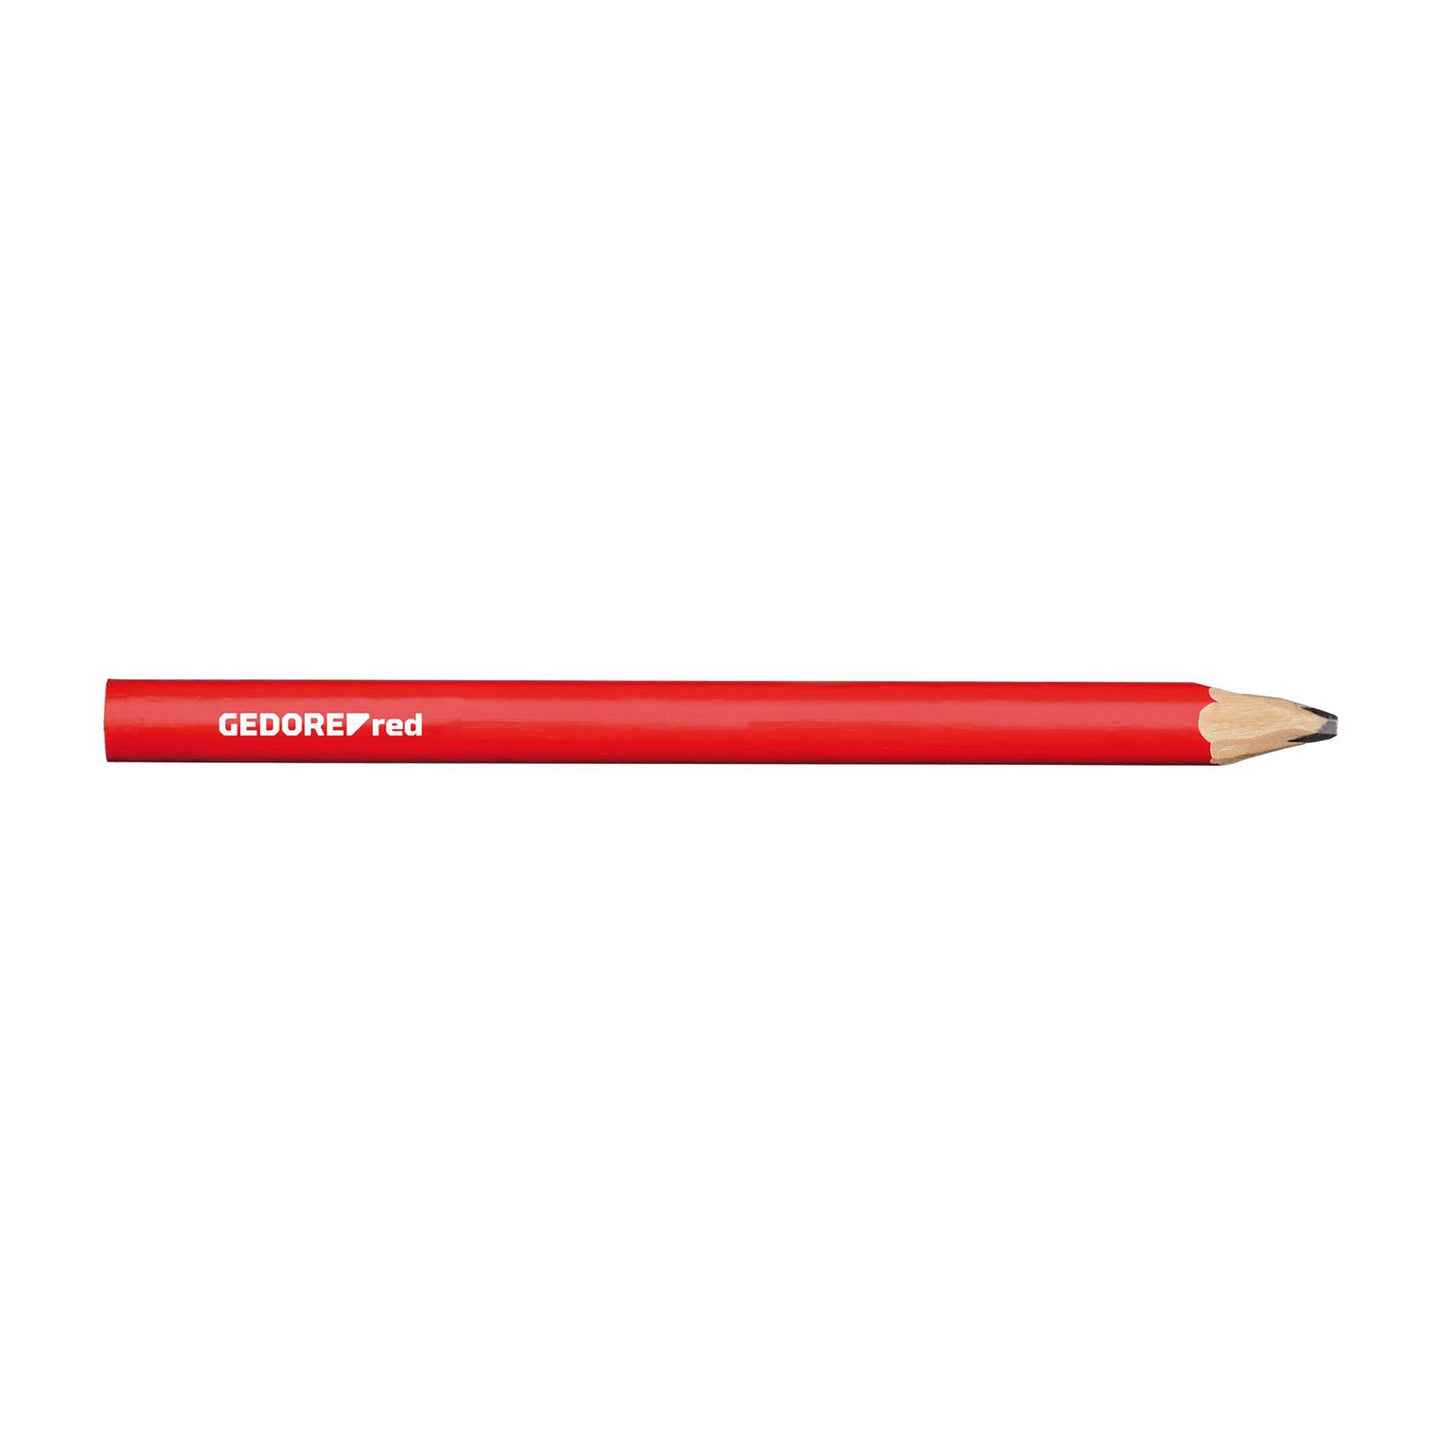 GEDORE rouge R90950012 - Crayon de menuisier, L=175 mm, ovale, rouge, 12 pièces (3301432)